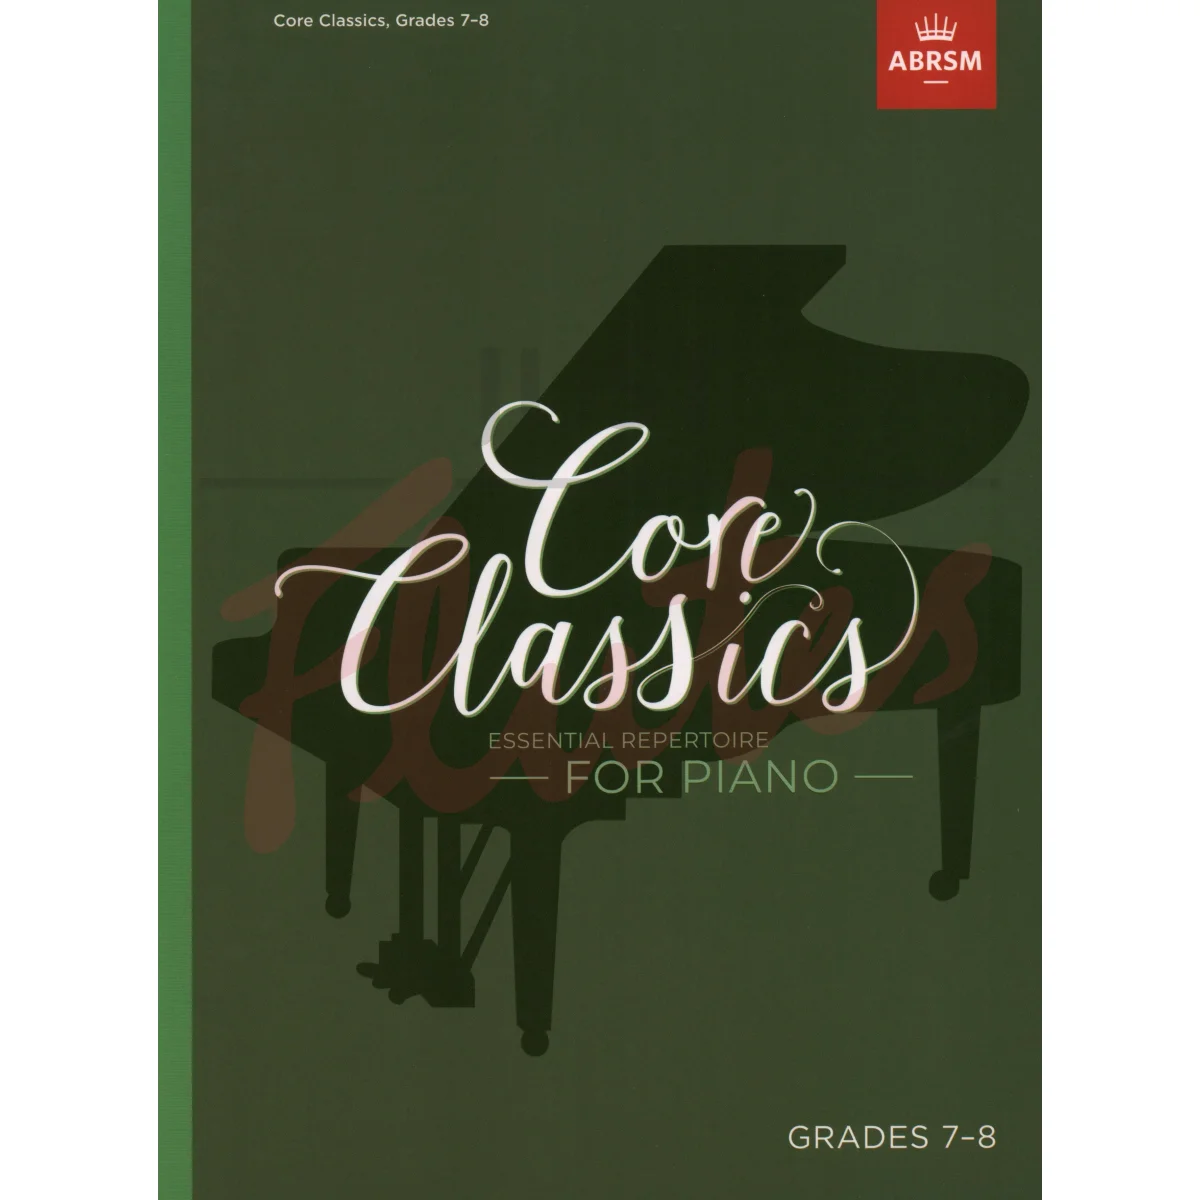 Core Classics Grades 7-8 Essential Repertoire for Piano